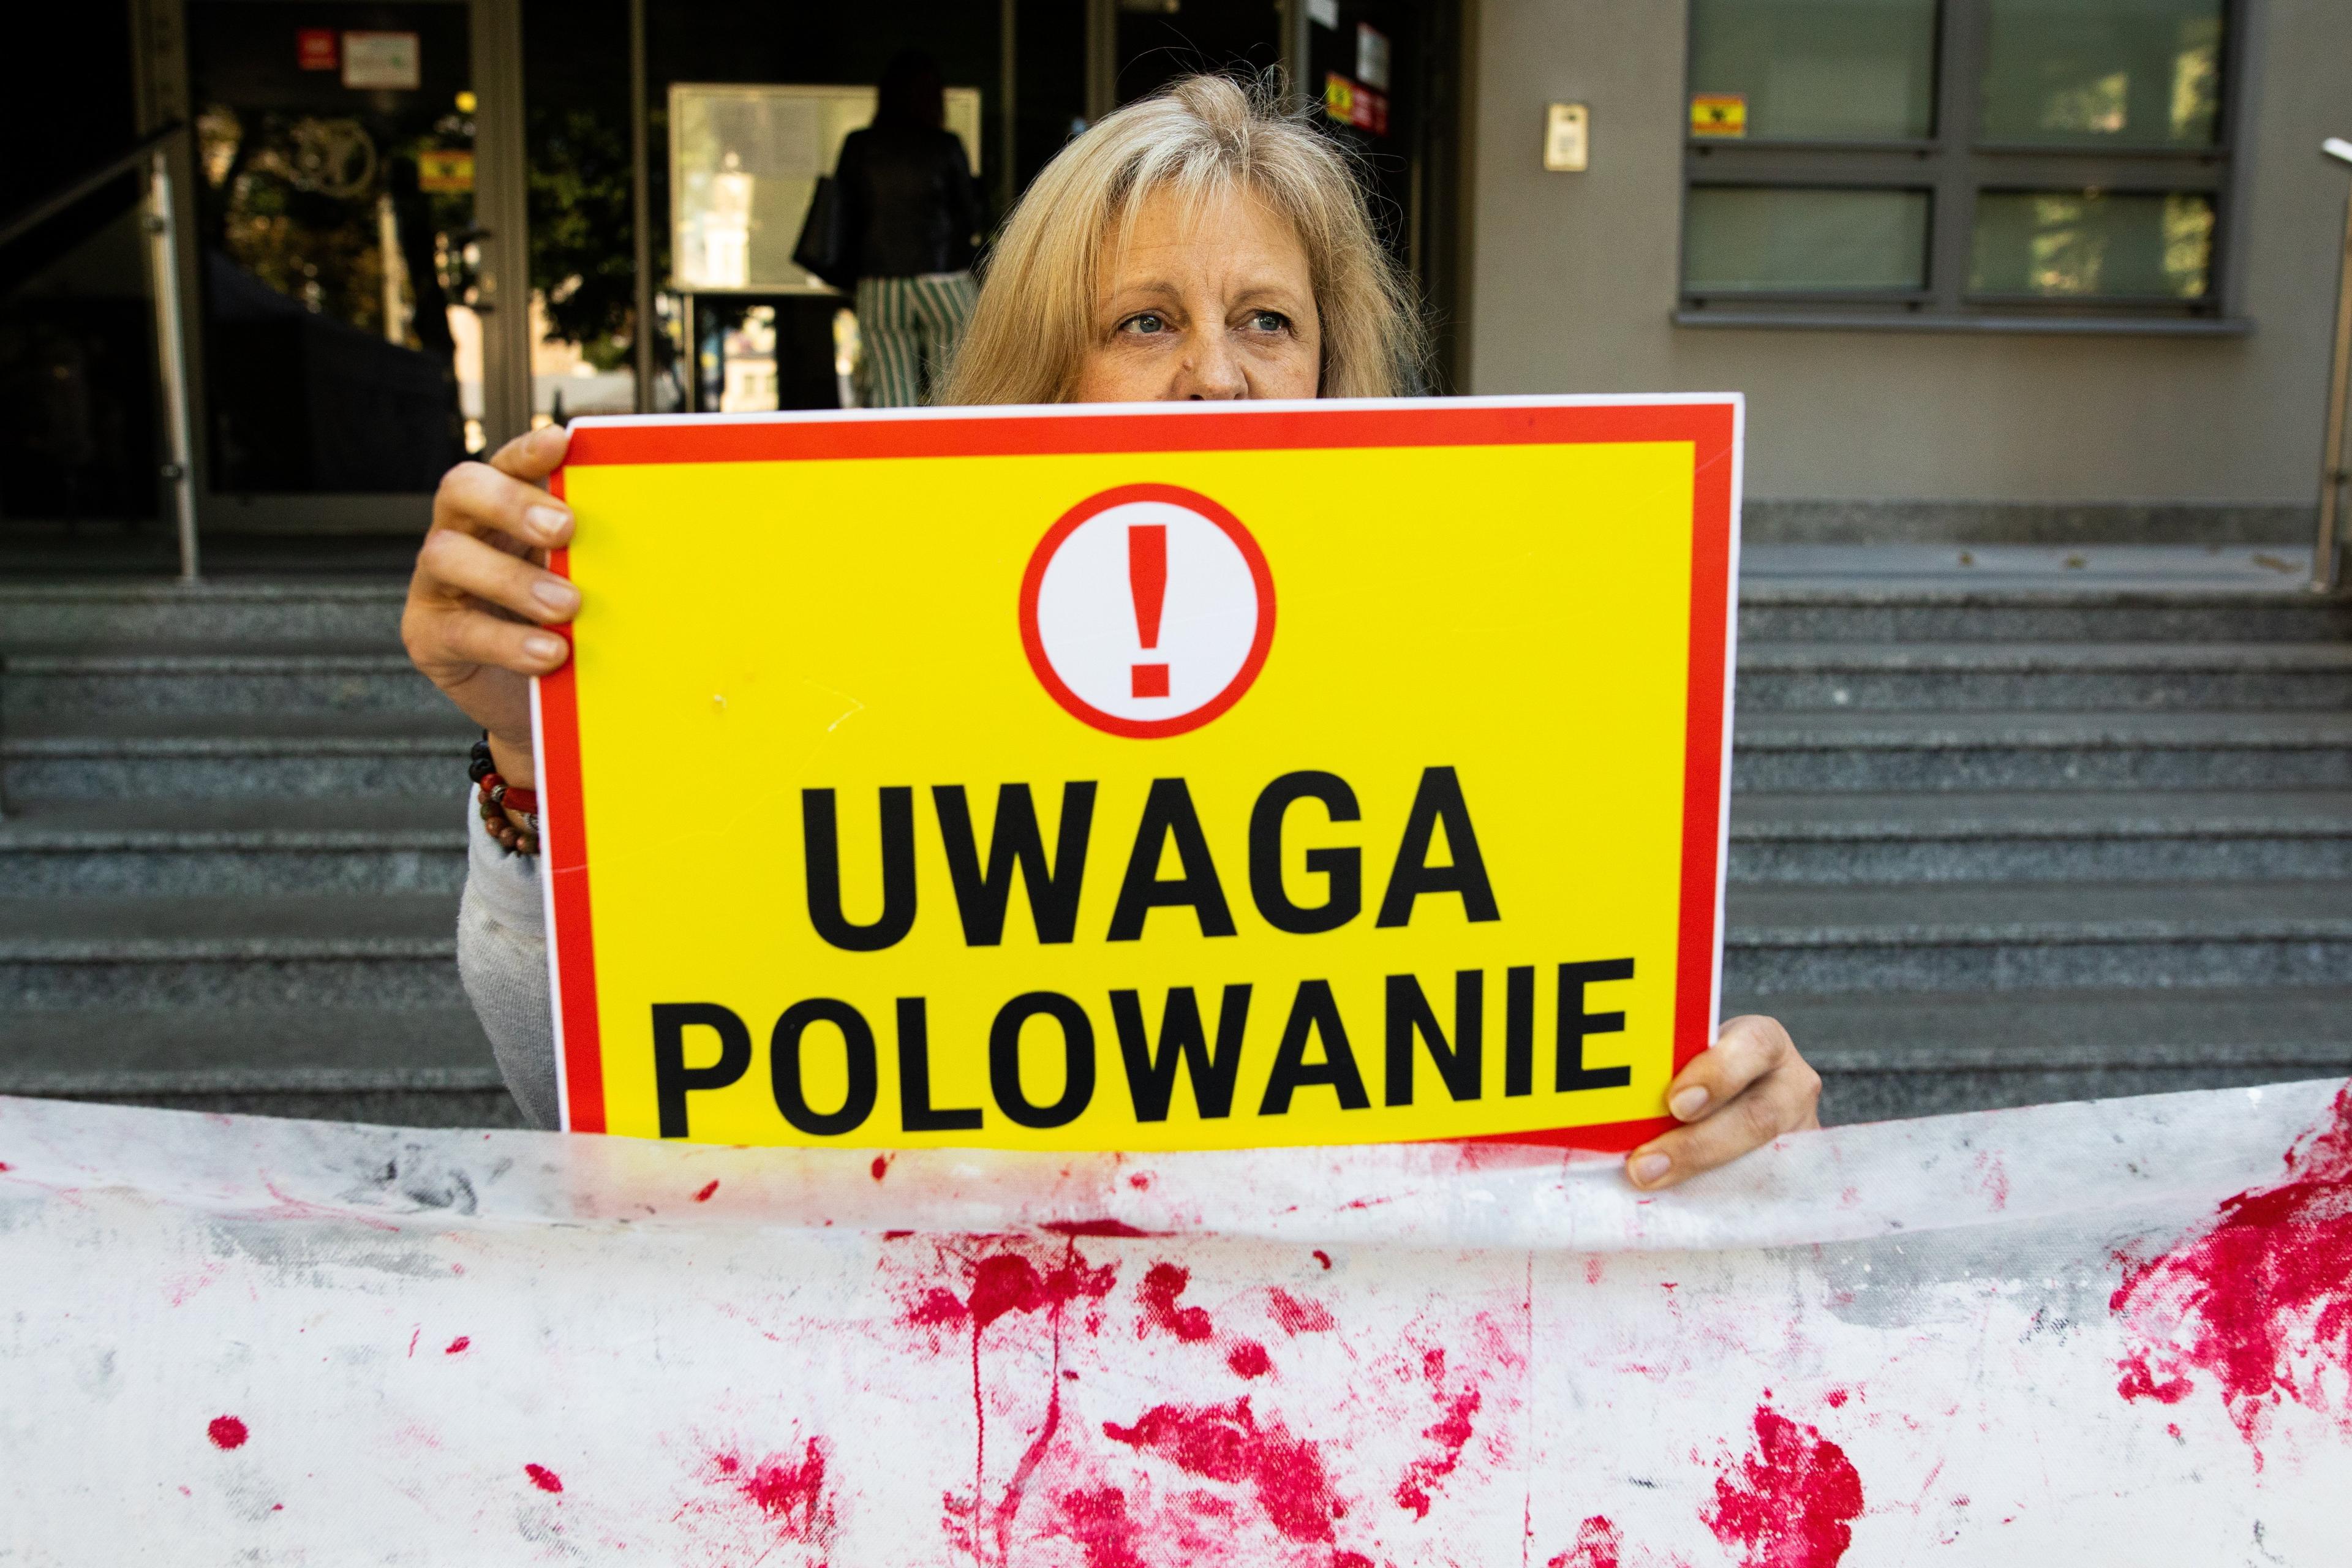 Kobieta trzyma tabliczkę z napisem "Uwaga Polowanie", poniżej zakrwawione prześcieradło